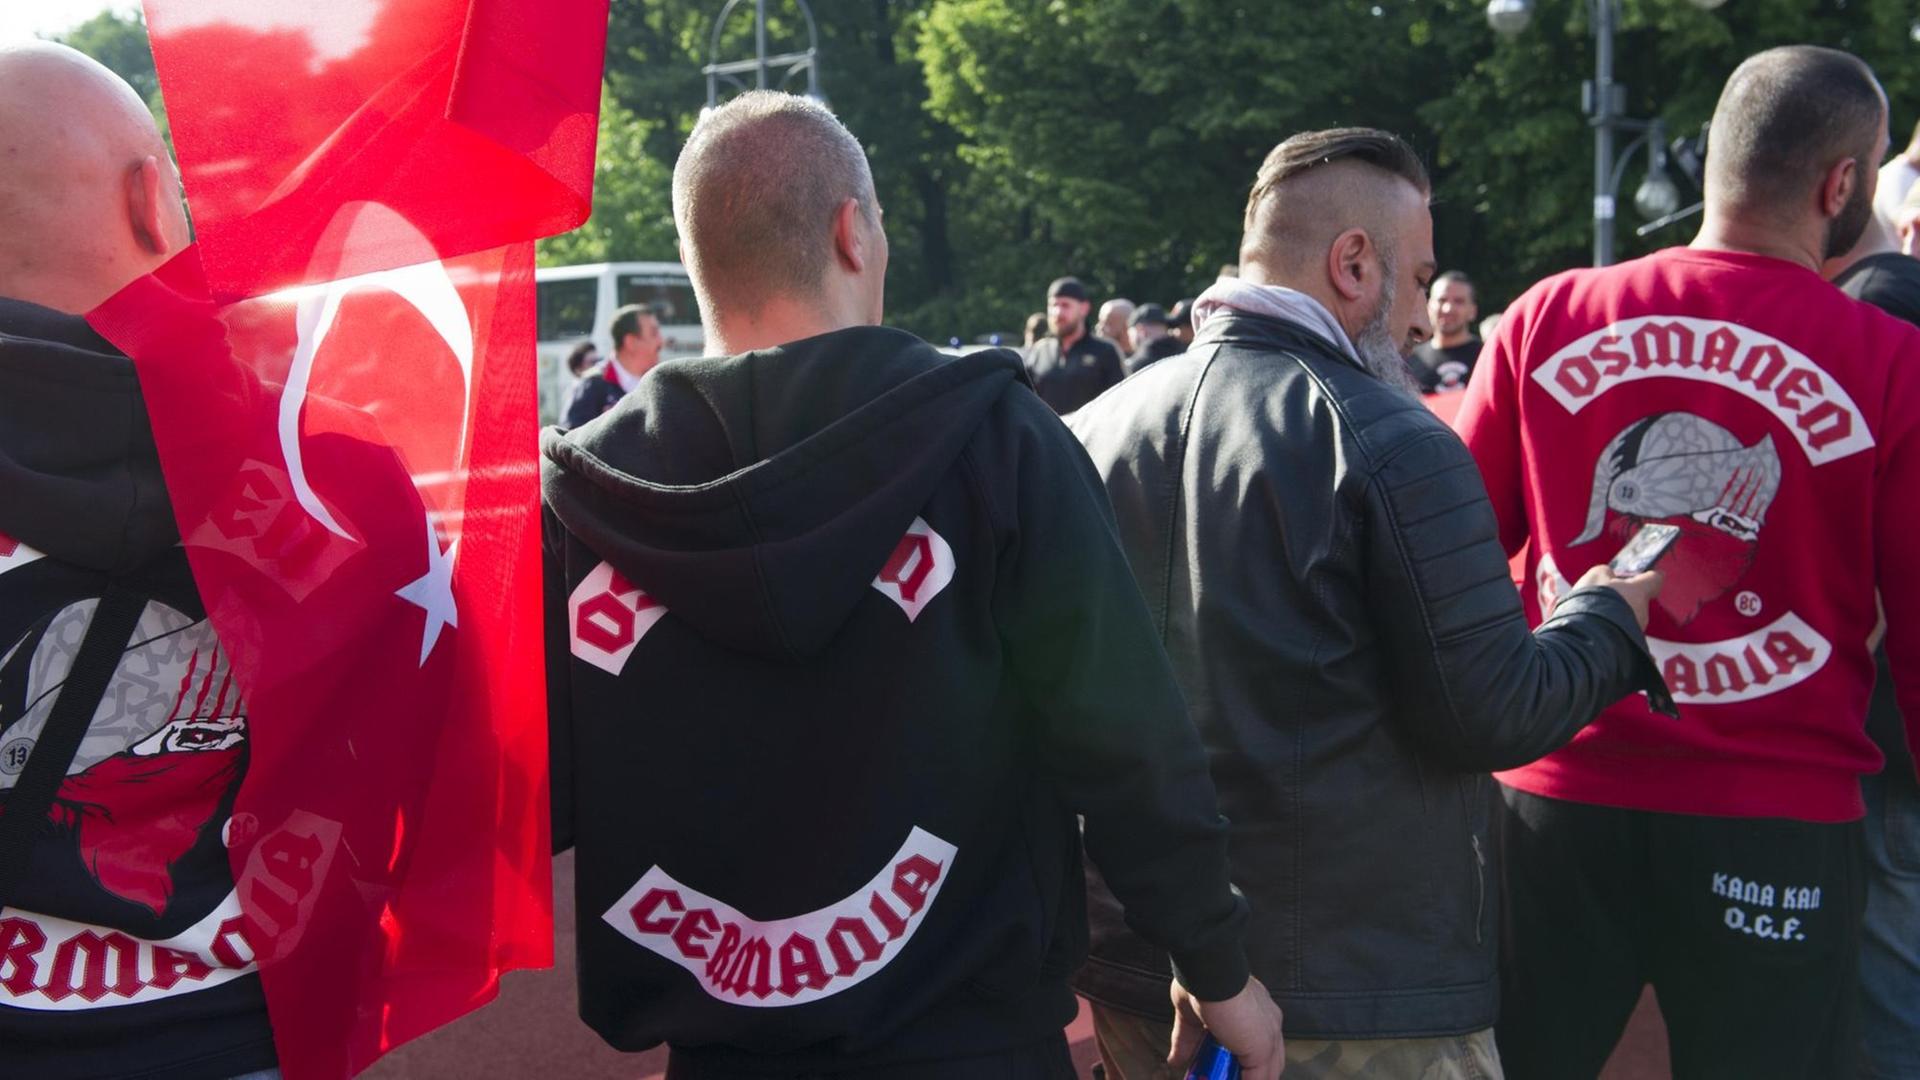 Demonstranten in Westen mit Aufschrift "Osmanen Germania" und einer Türkeiflagge am 01. Juni 2016 in Berlin bei einer Demonstration gegen die Bundestagsresolution zum Völkermord in Armenien